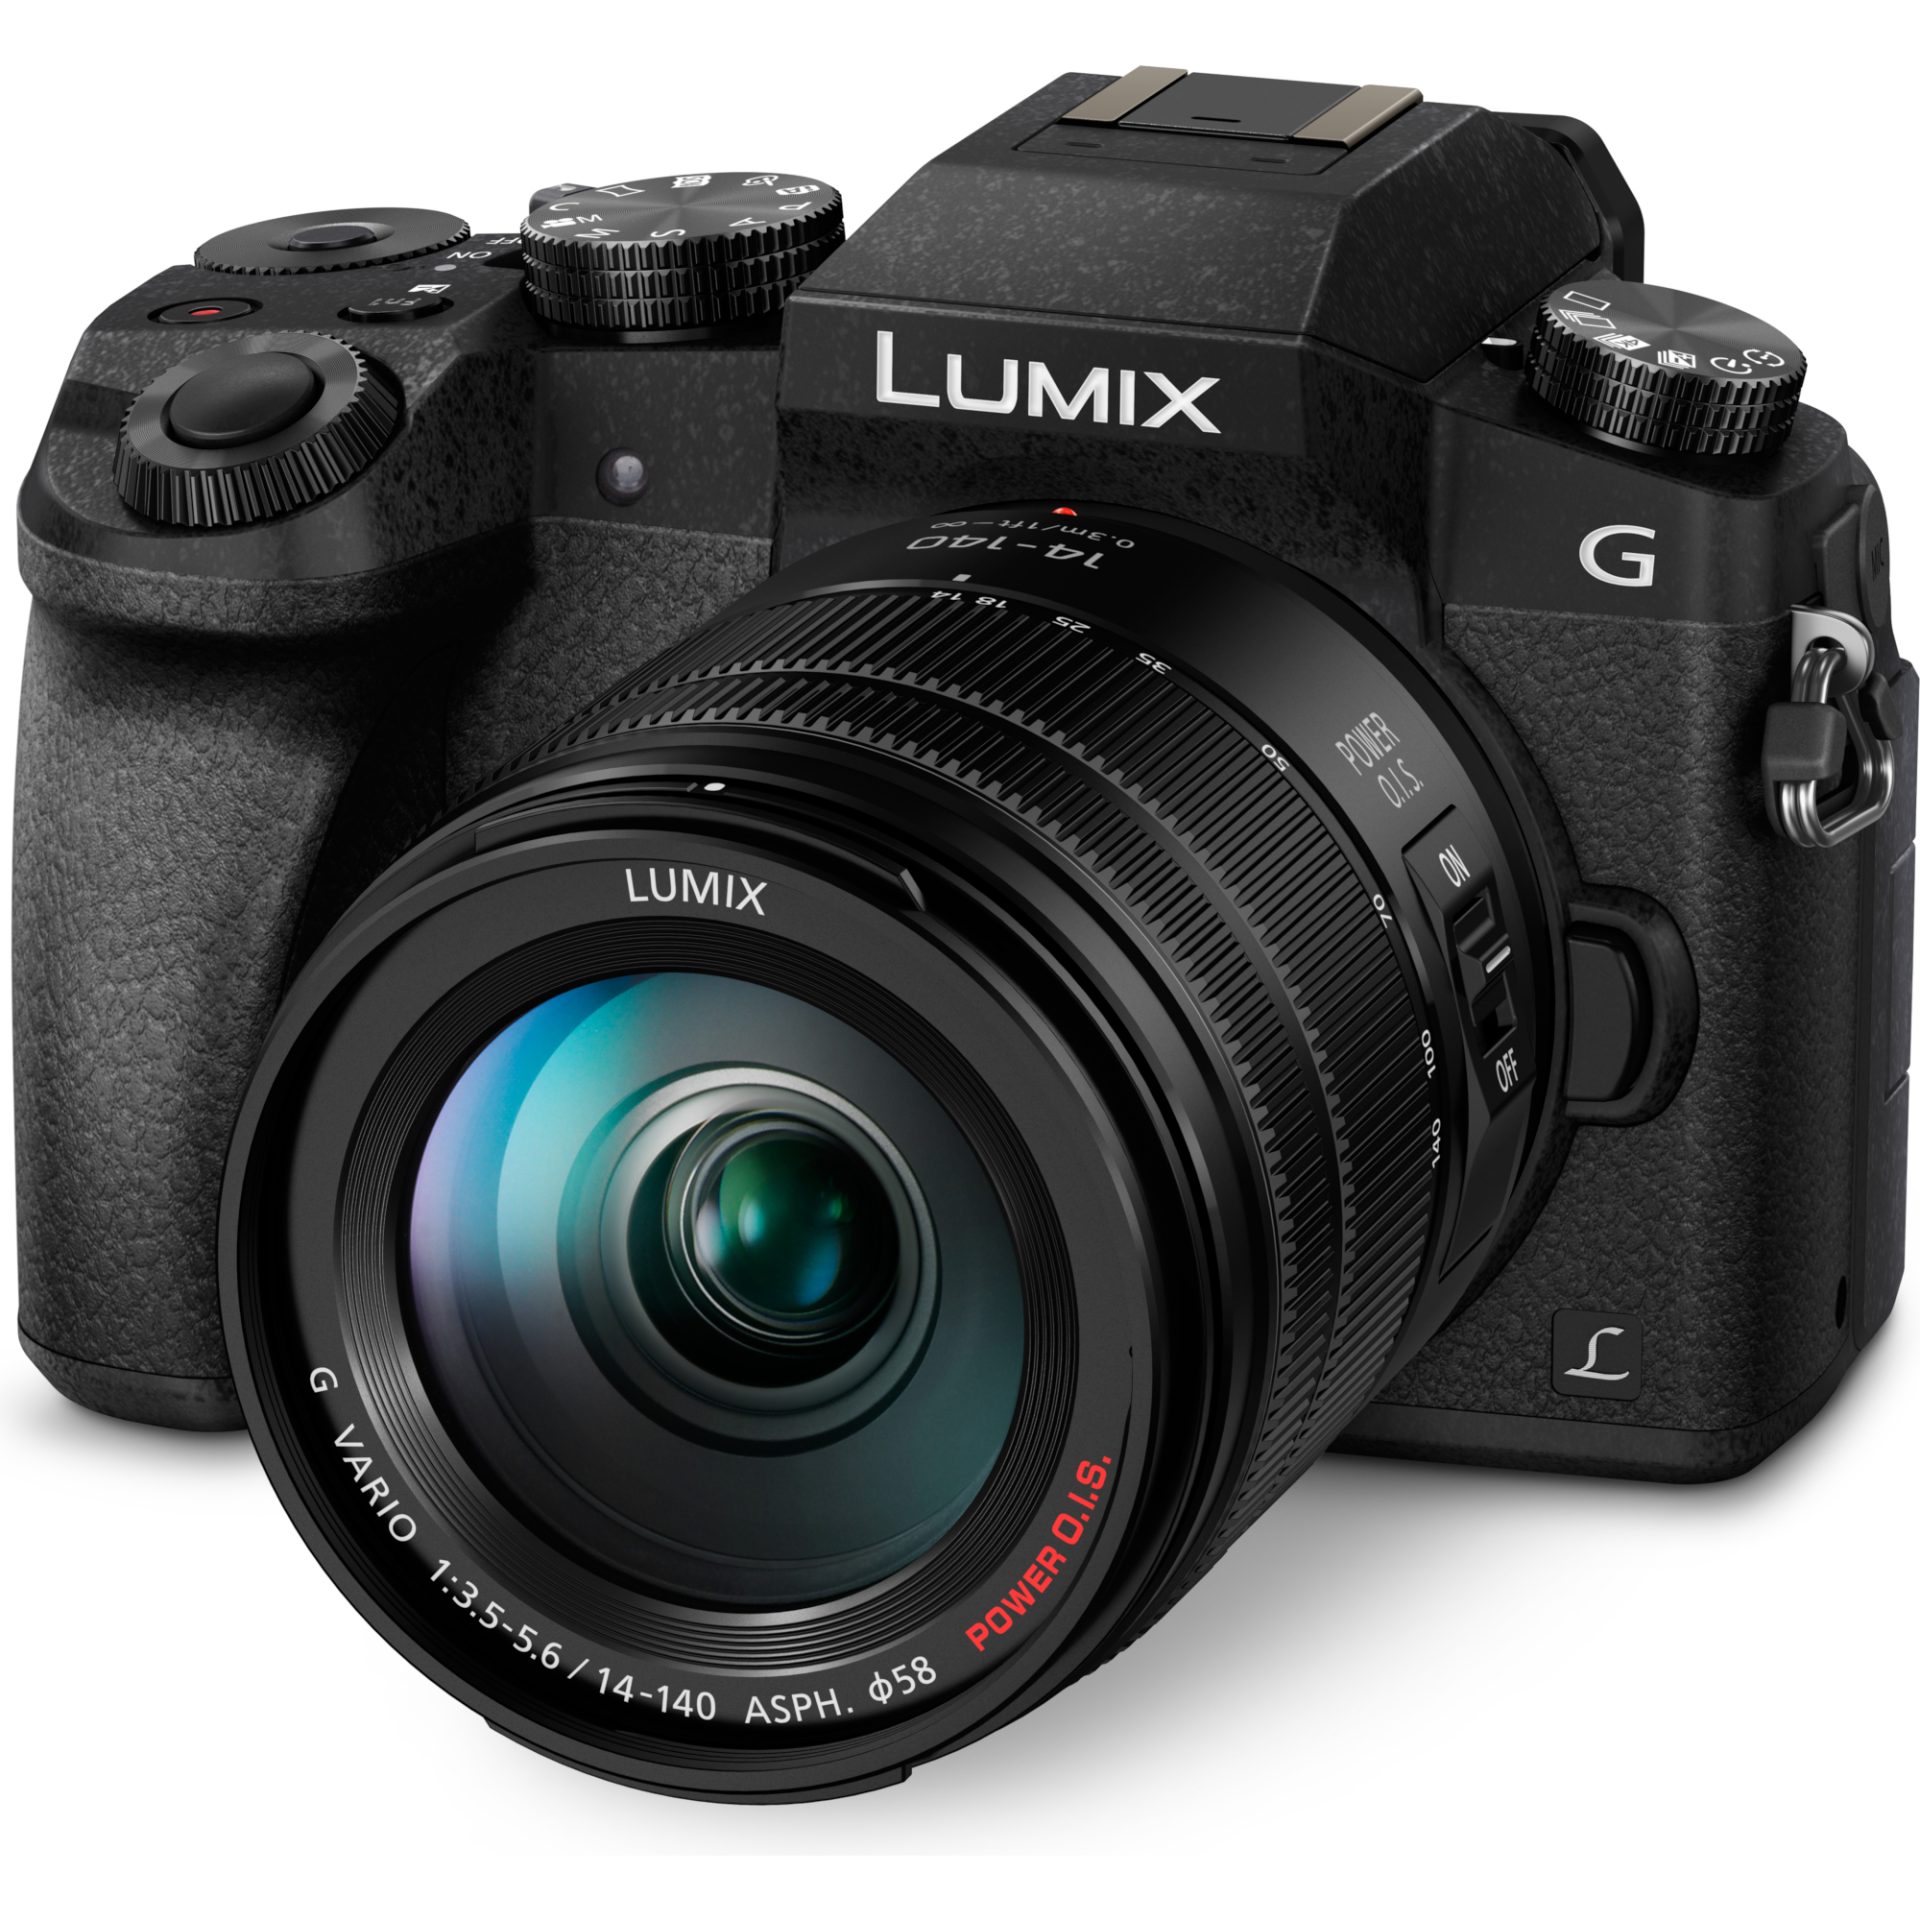 Panasonic DMC-G7H Lumix bezzrcadlový digitální fotoaparát + H-FSA14140 14-140mm, F3.5-5.6 (Live MOS 16MP, 4K, Post Focus, Autofocus DFD, OLED LVF), Če